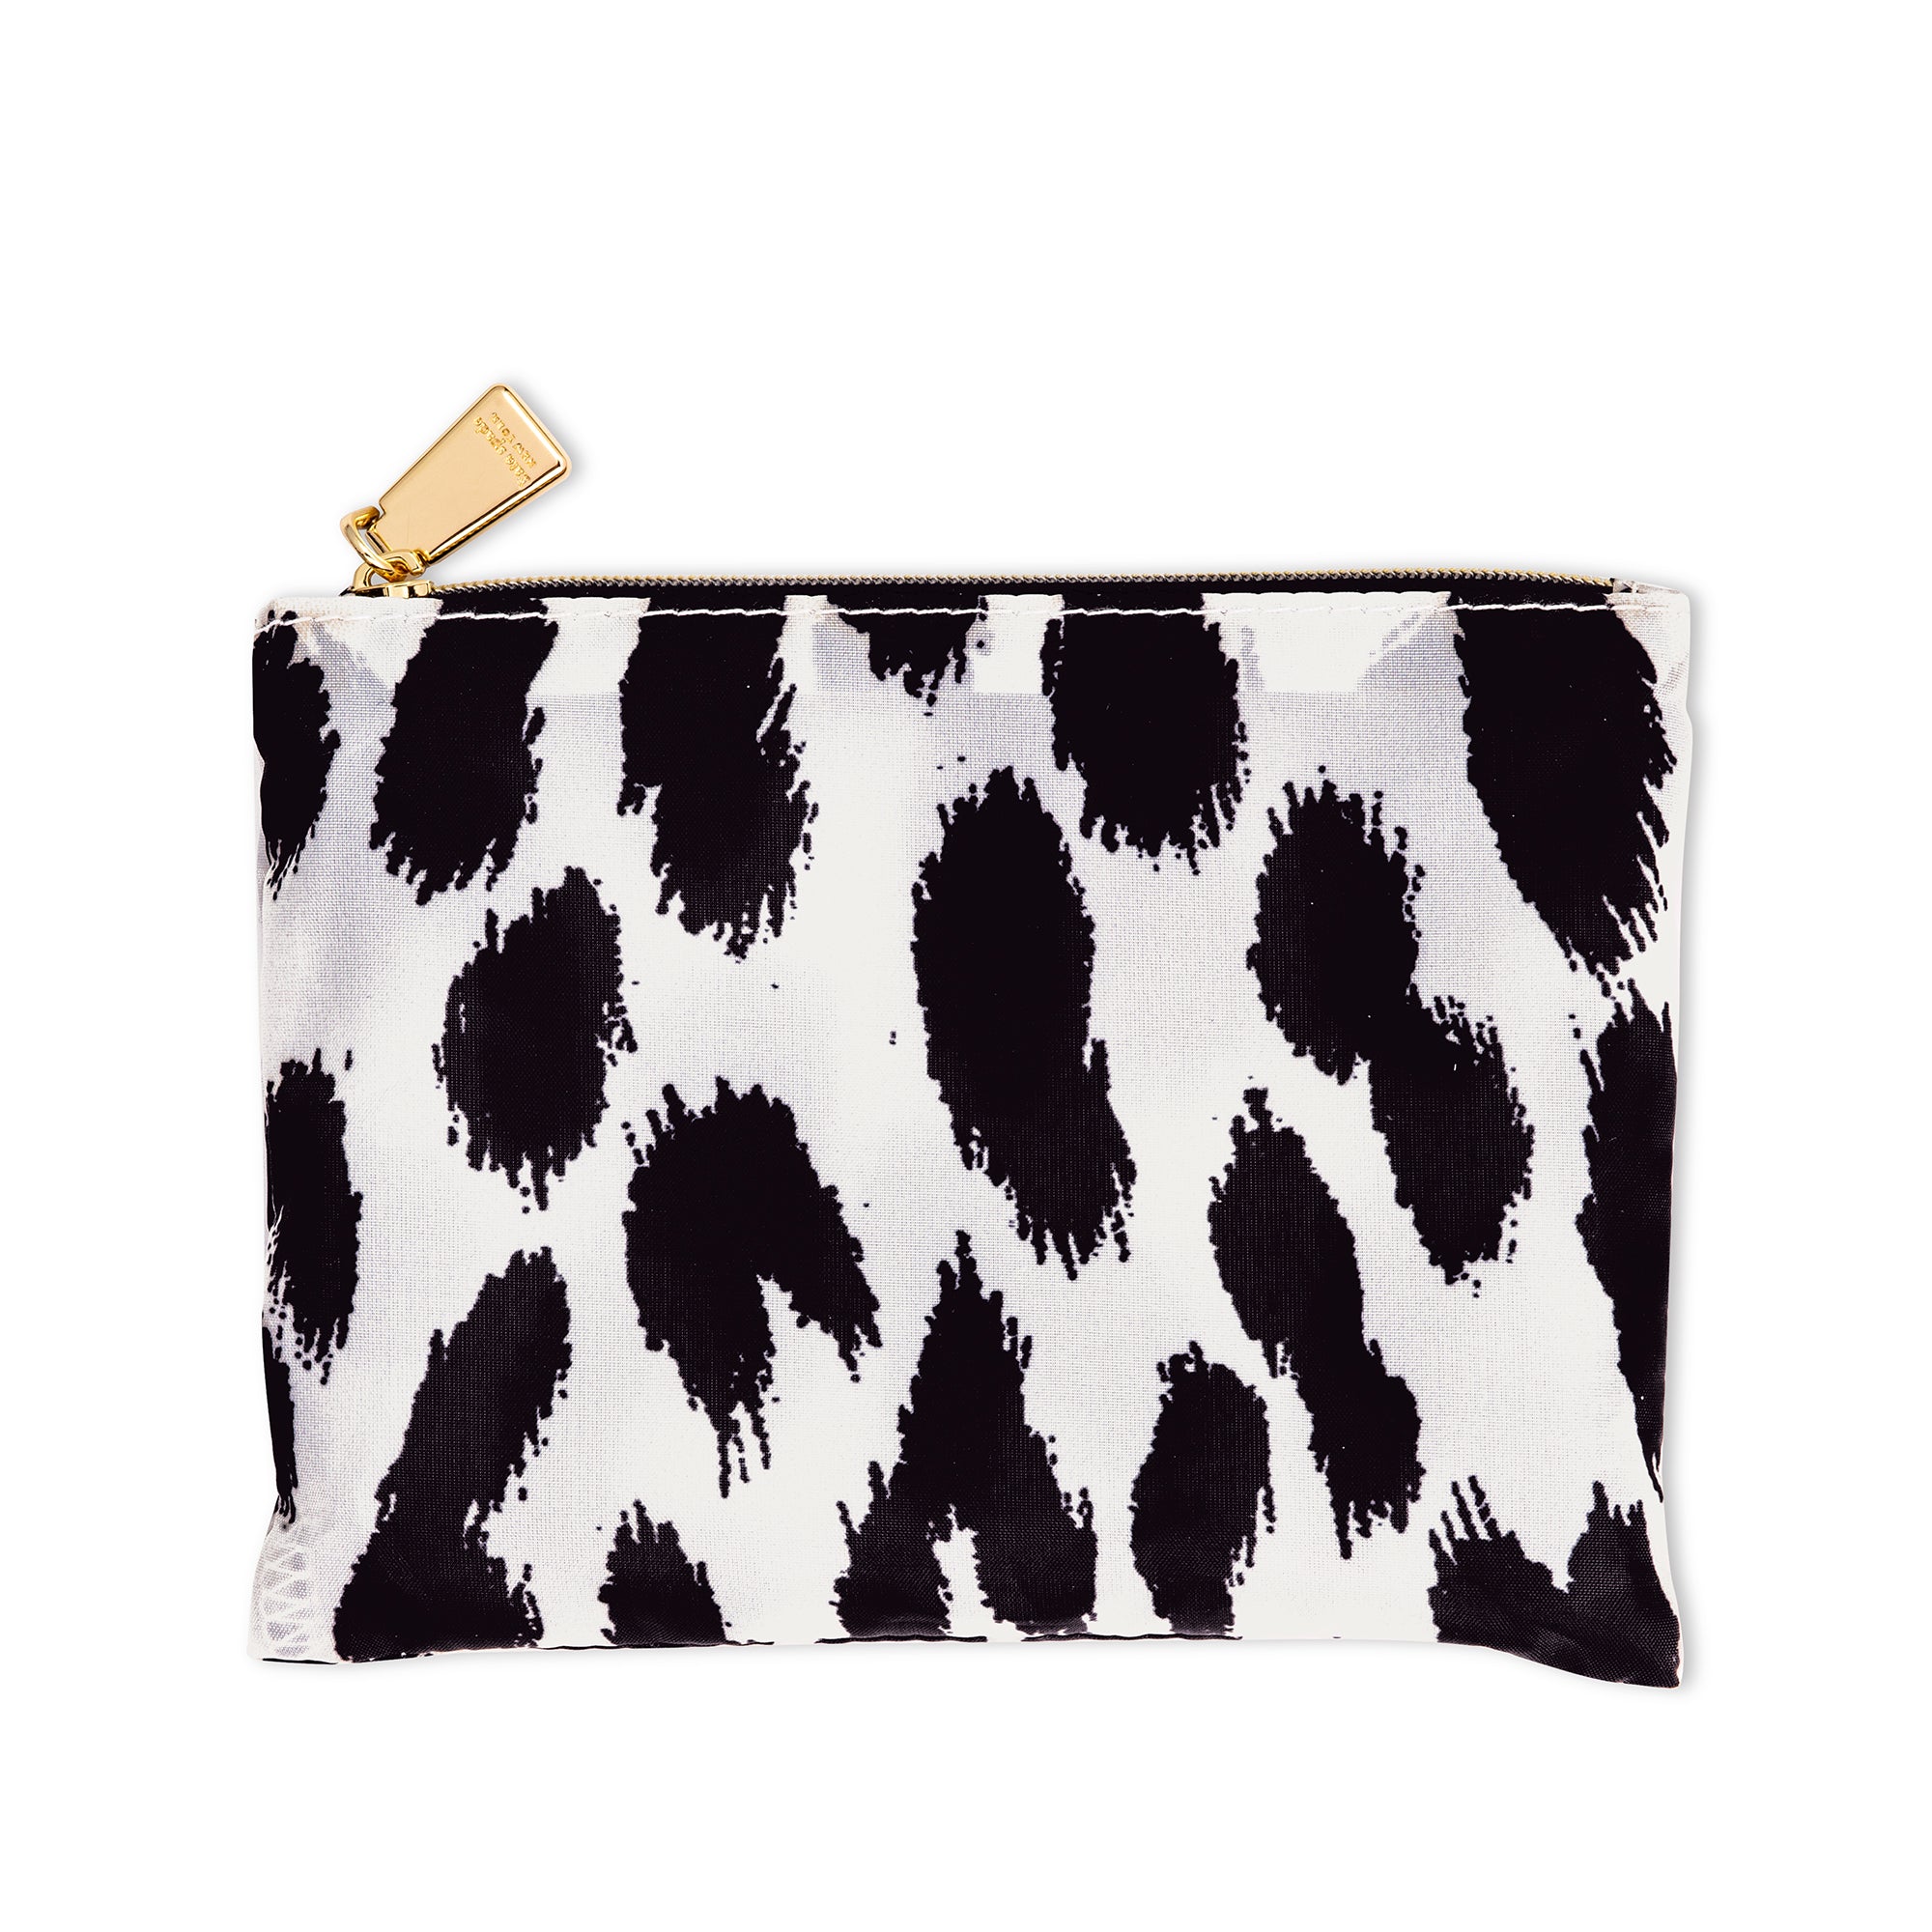 kate spade new york Animal Print Bags & Handbags for Women for sale | eBay